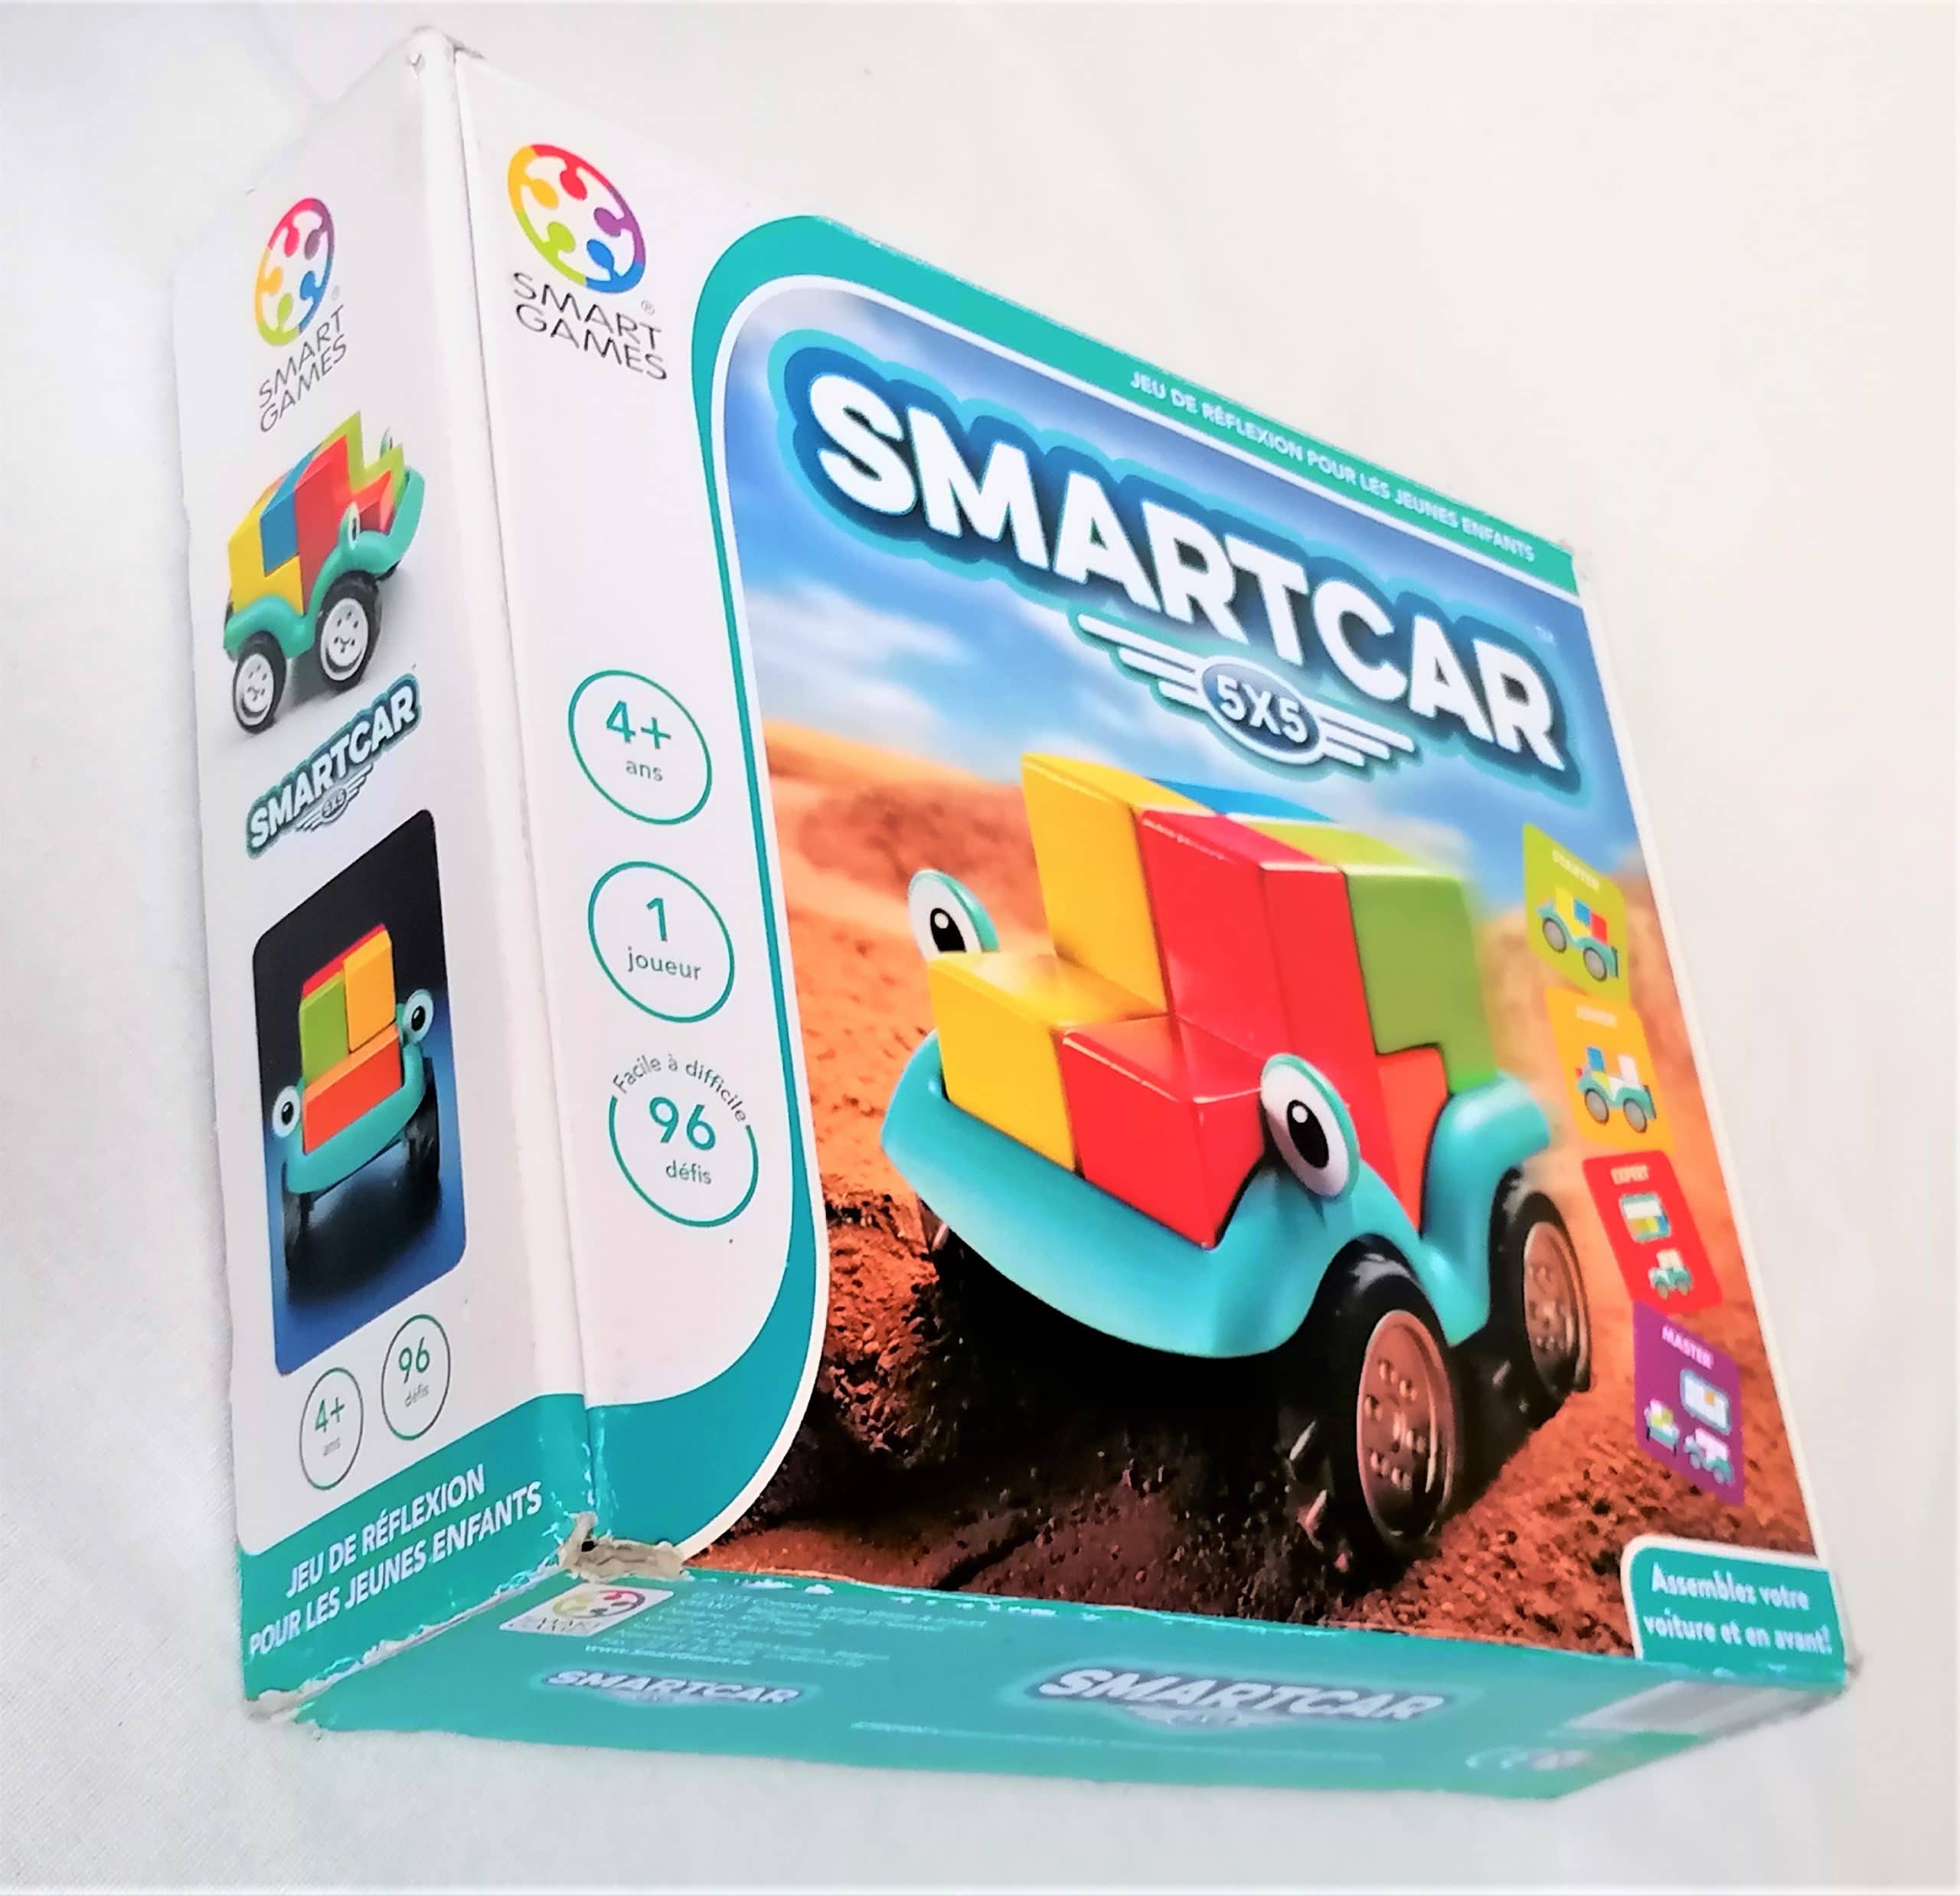 Smart Games - Smartcar 5x5 - Jeux de société